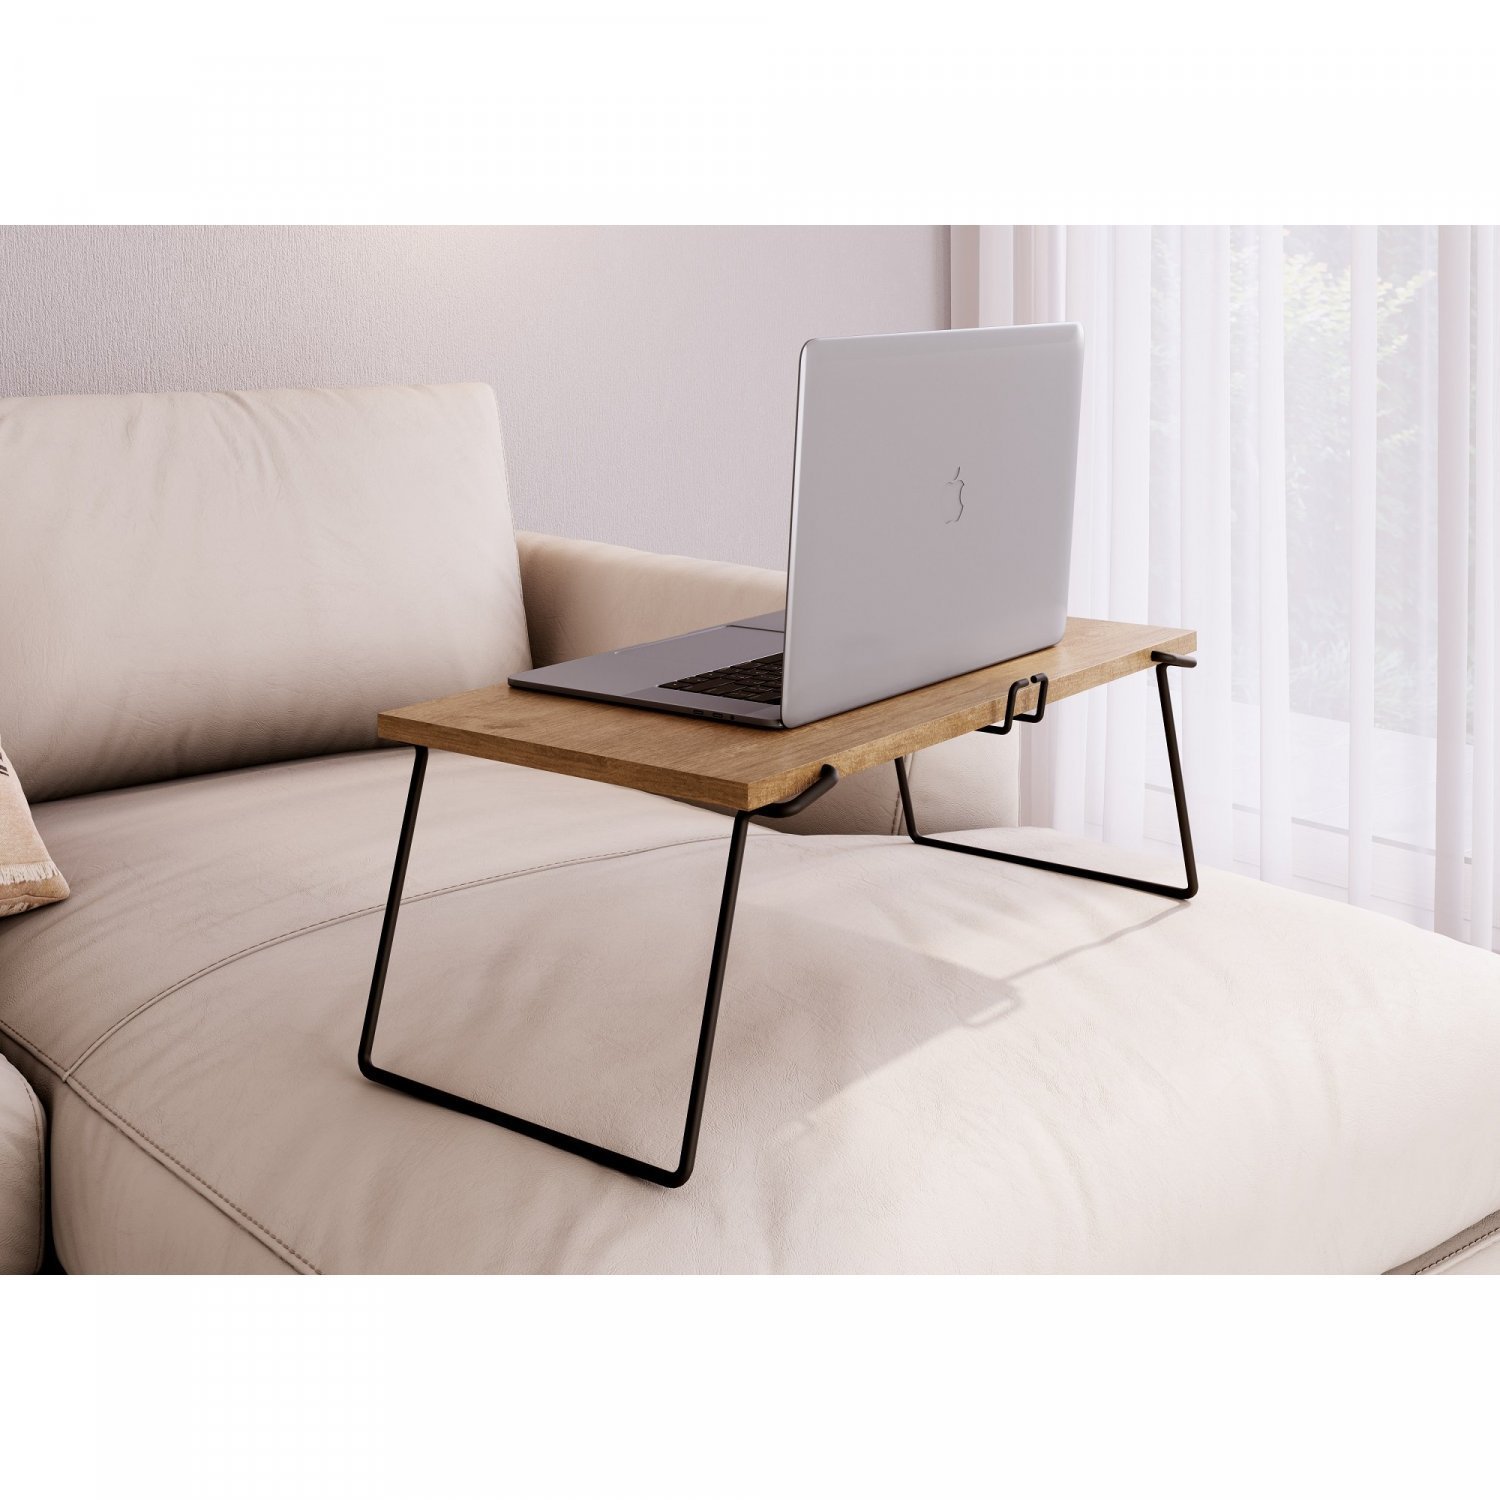 Mesa para Notebook 54x30cm Dobrável com Suporte de Smartphone Artesano